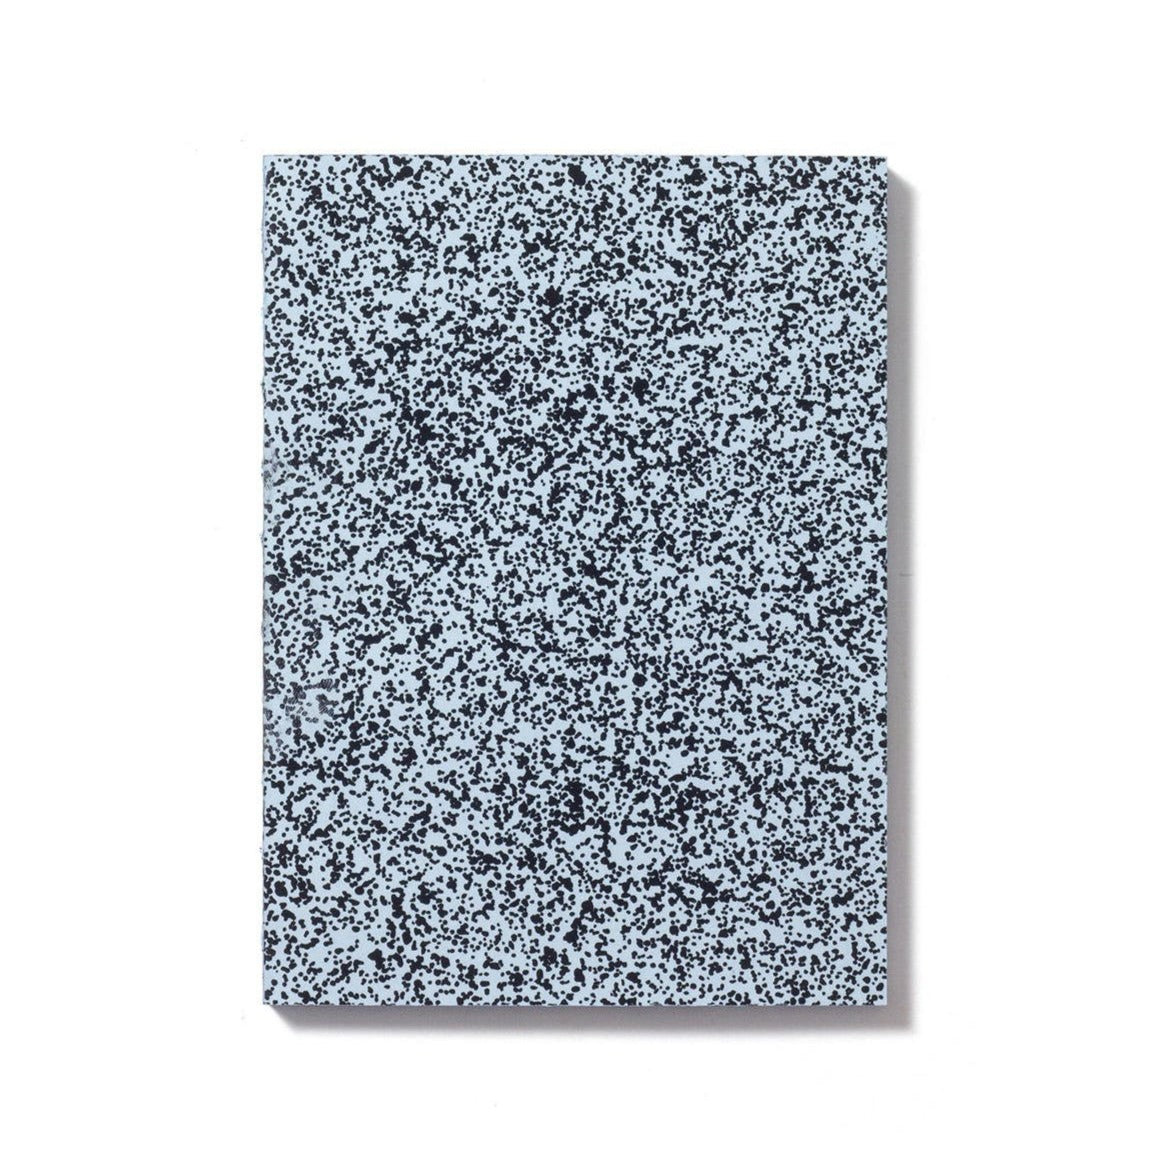 Labobratori Spray Splash Soft Cover Notebook 13 x 18